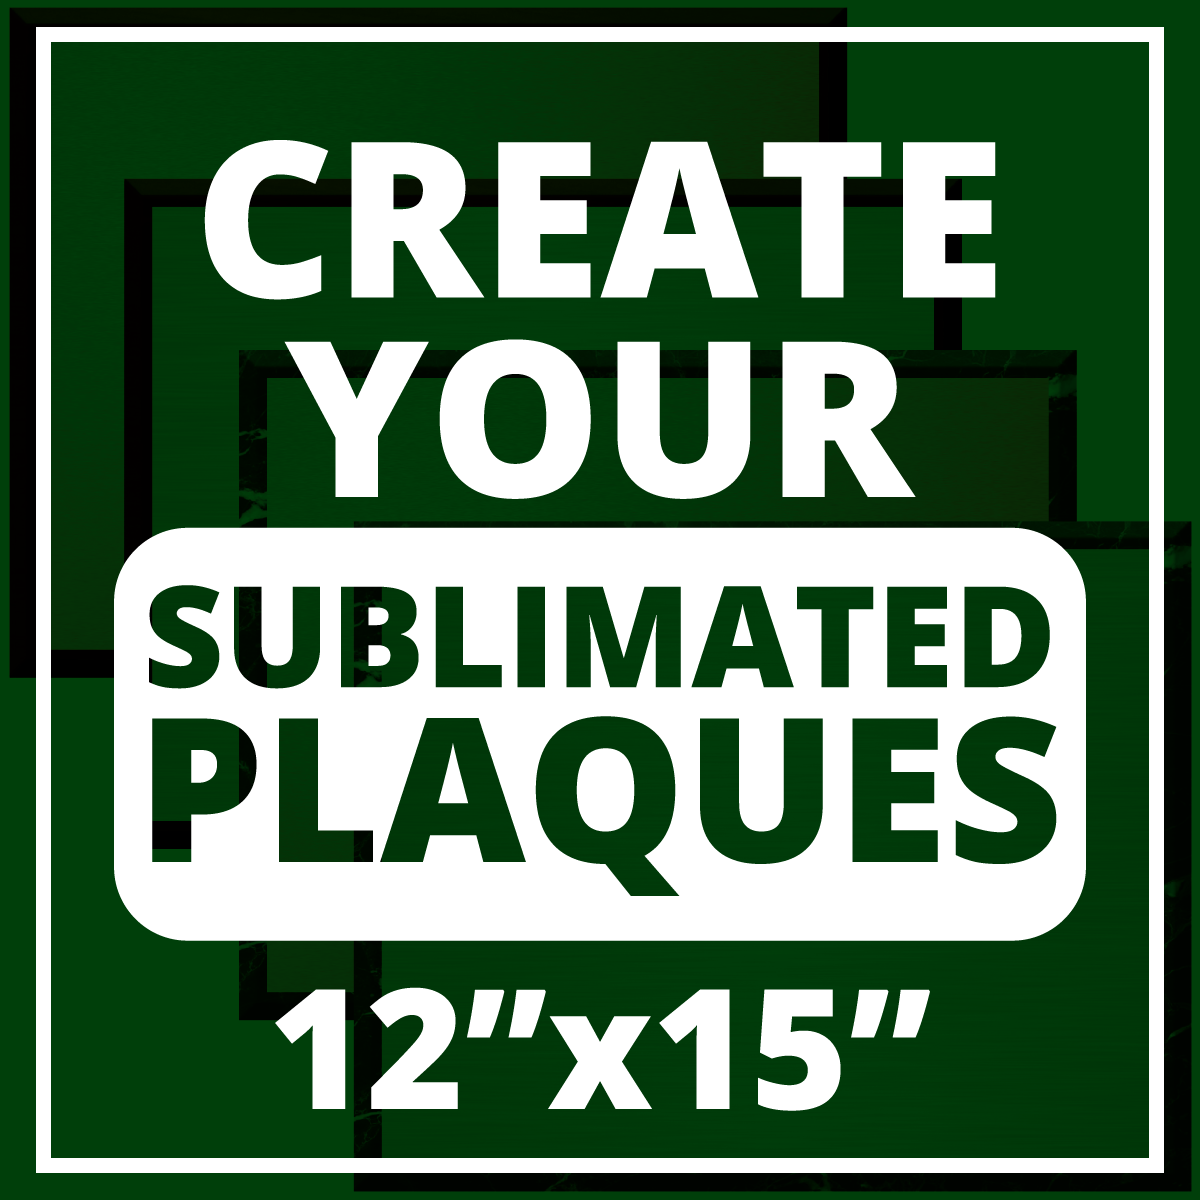 Double Plate Plaque - Sublimation